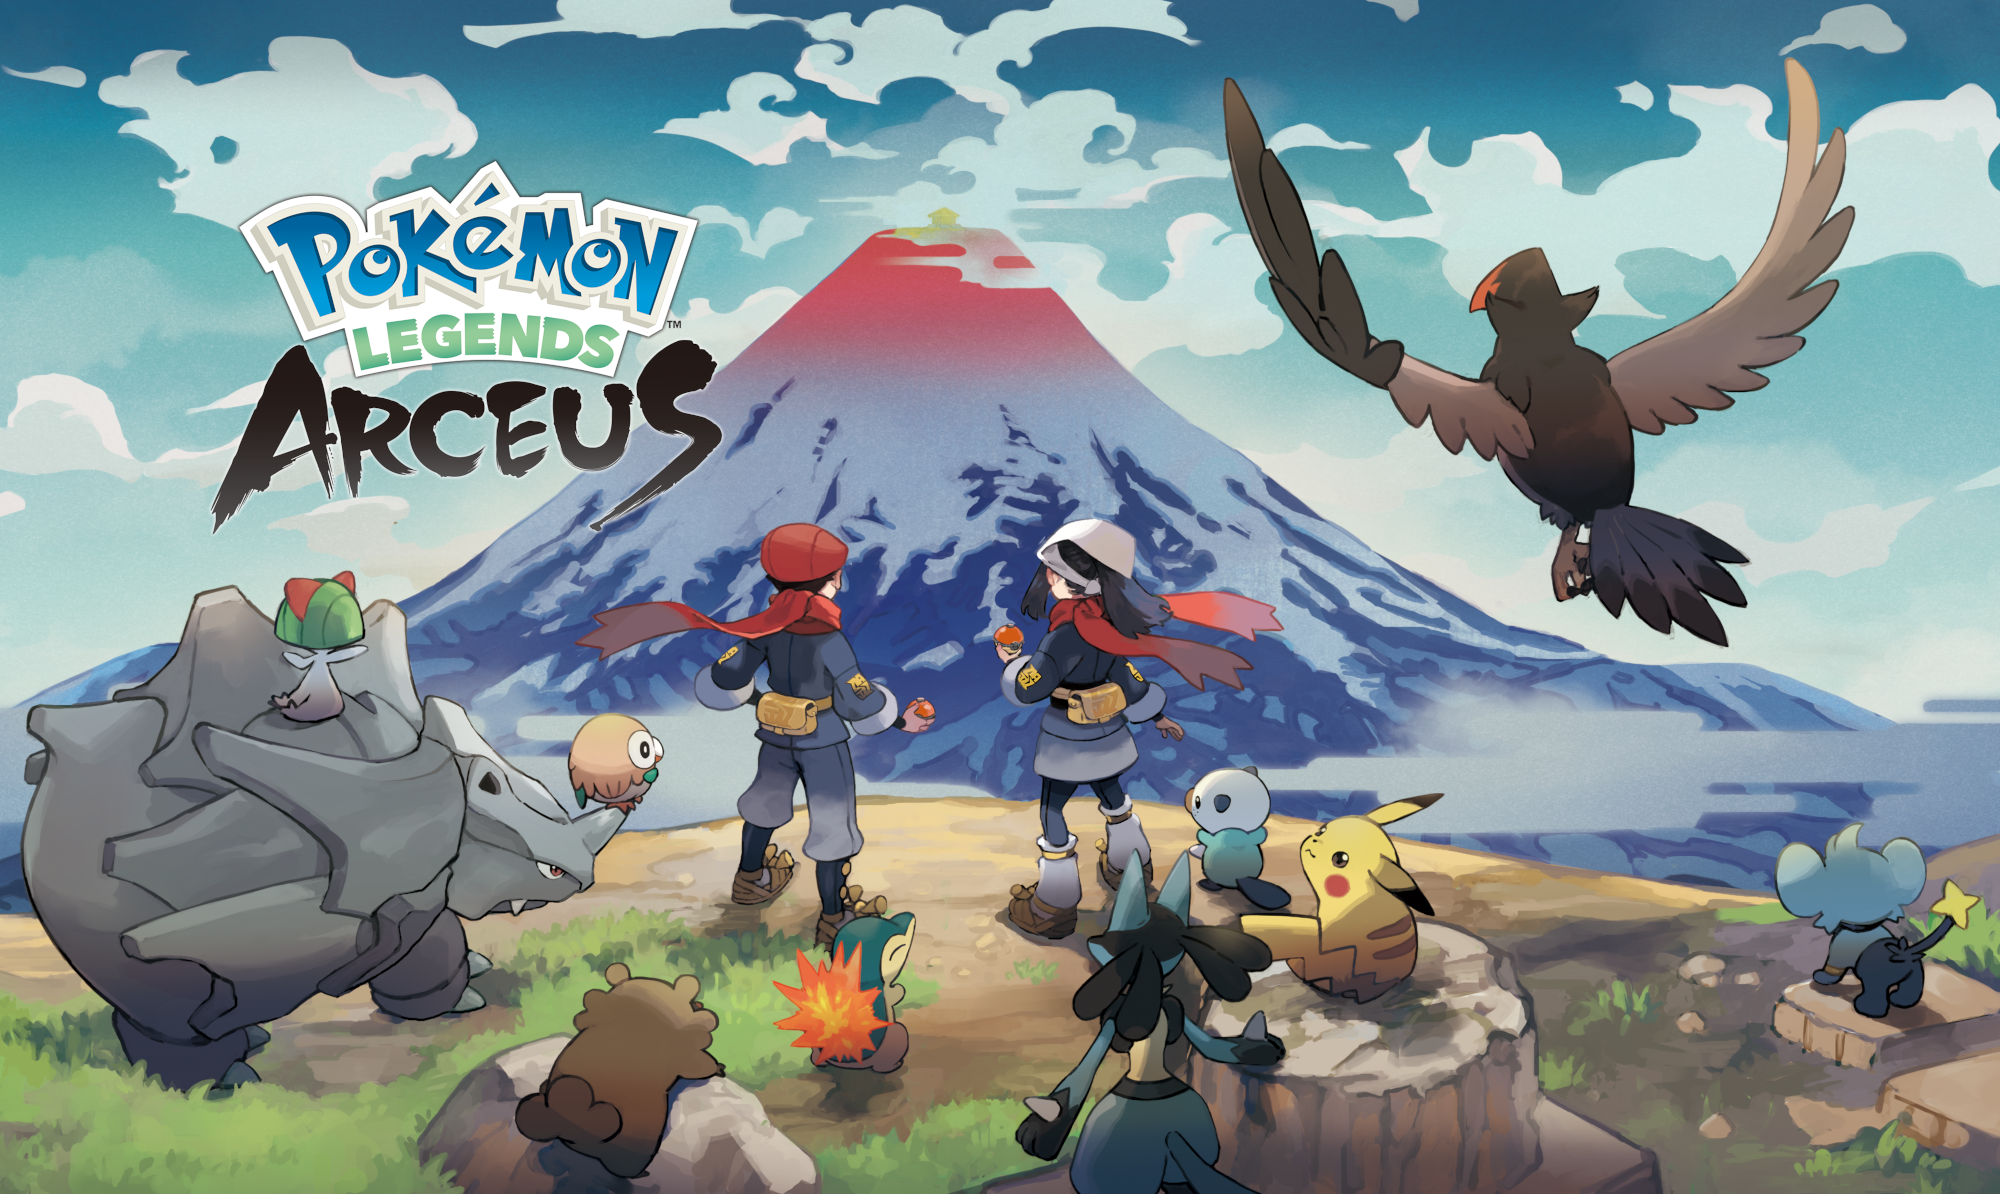 Pokemon Legends: Arceus - How to Complete the Pokedex